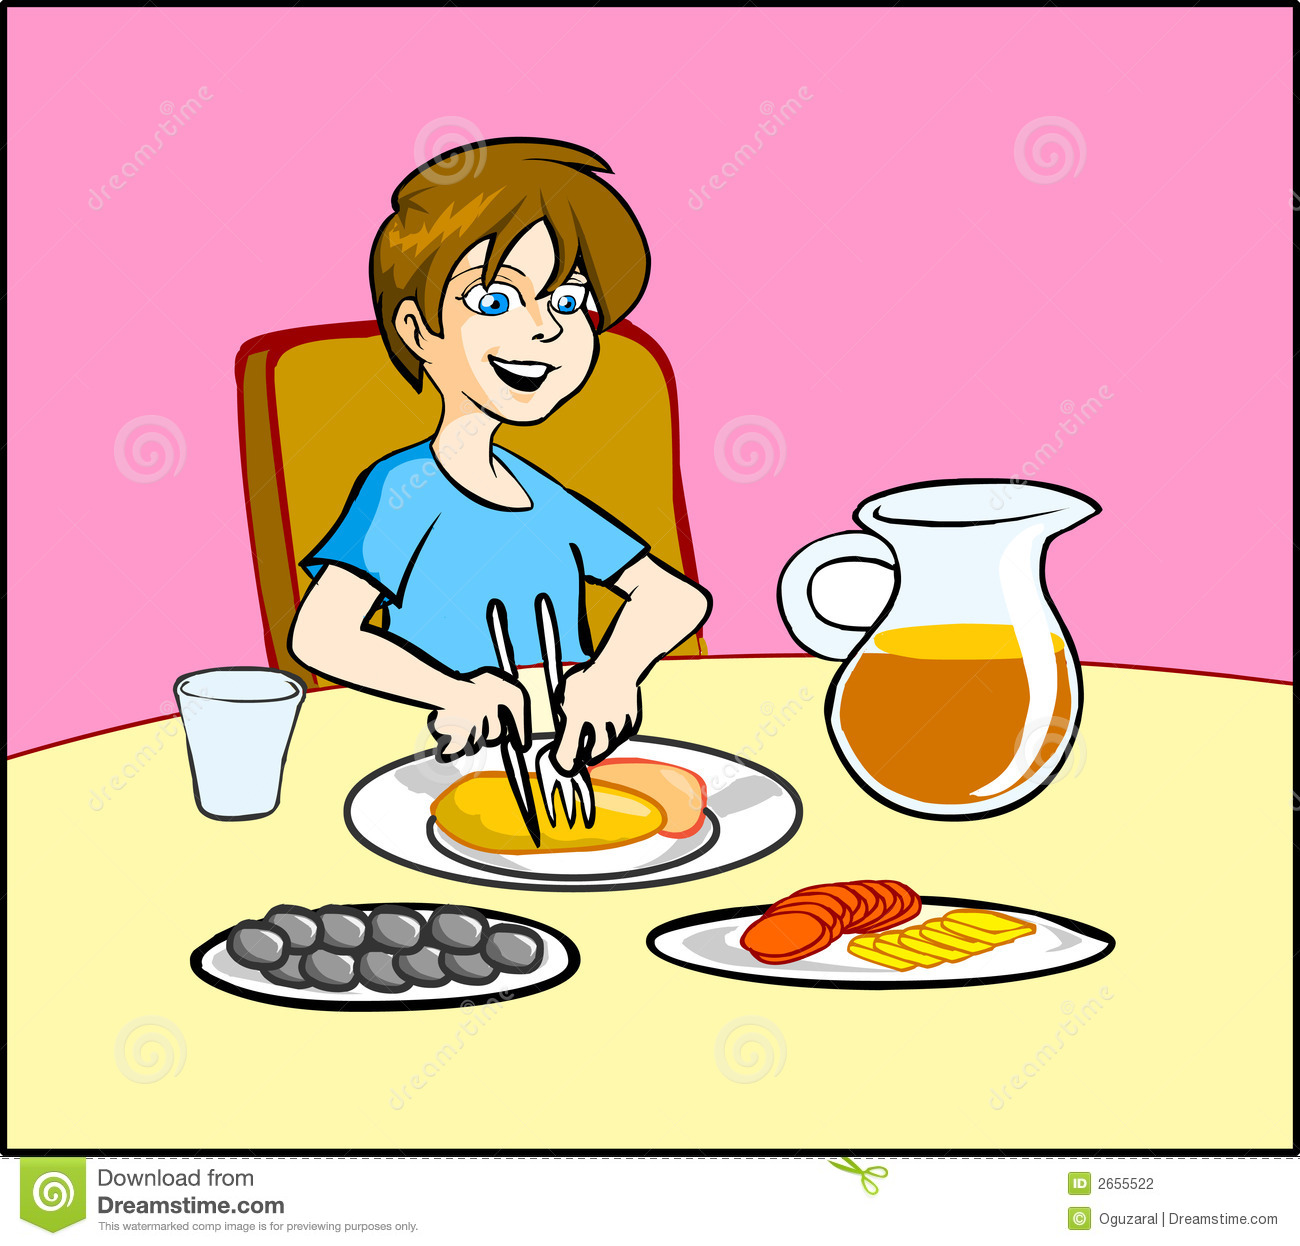 Vector Illustration Of A Boy Having Breakfast